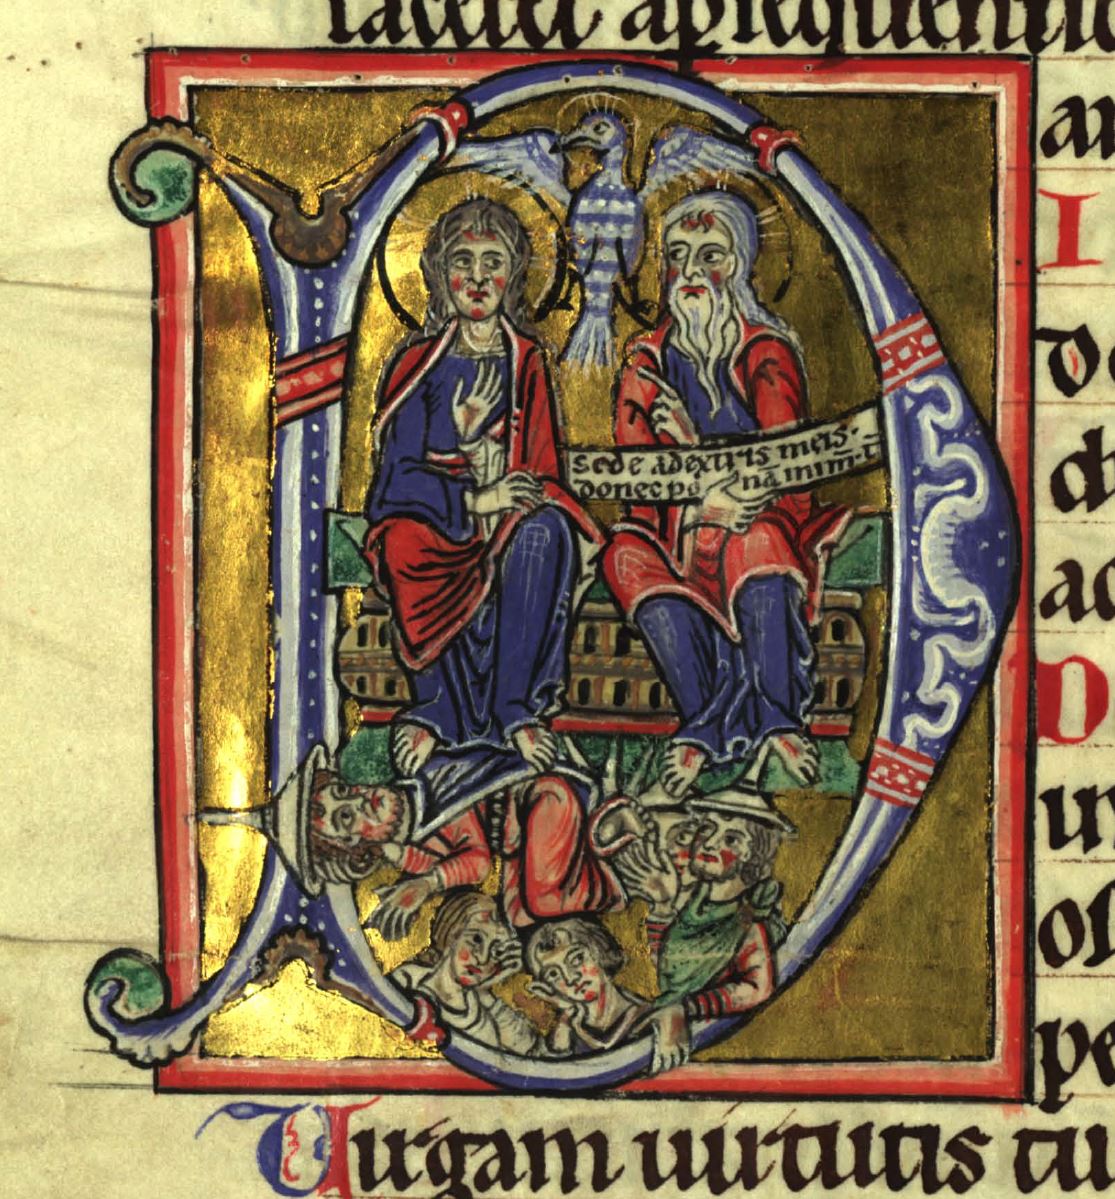 1230 ca hiltegerus psalter (Wurzburg-Ebracher) Munchen Universitatsbibliothek UB 4 Cod. ms. 24) fol 134v (Cimelie 15)